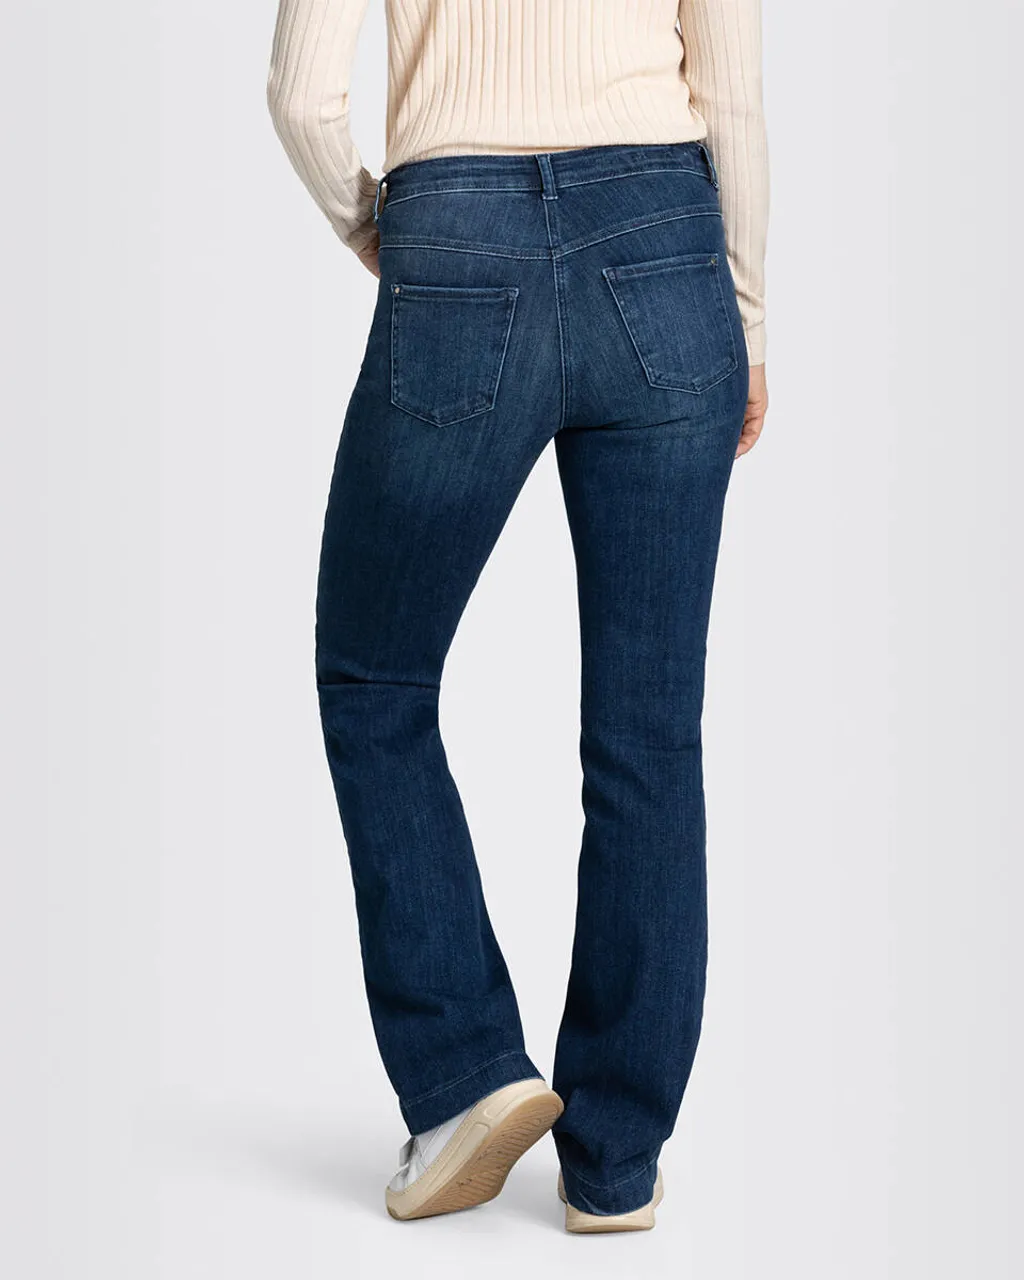 MAC Jeans dream boot 0358l5429